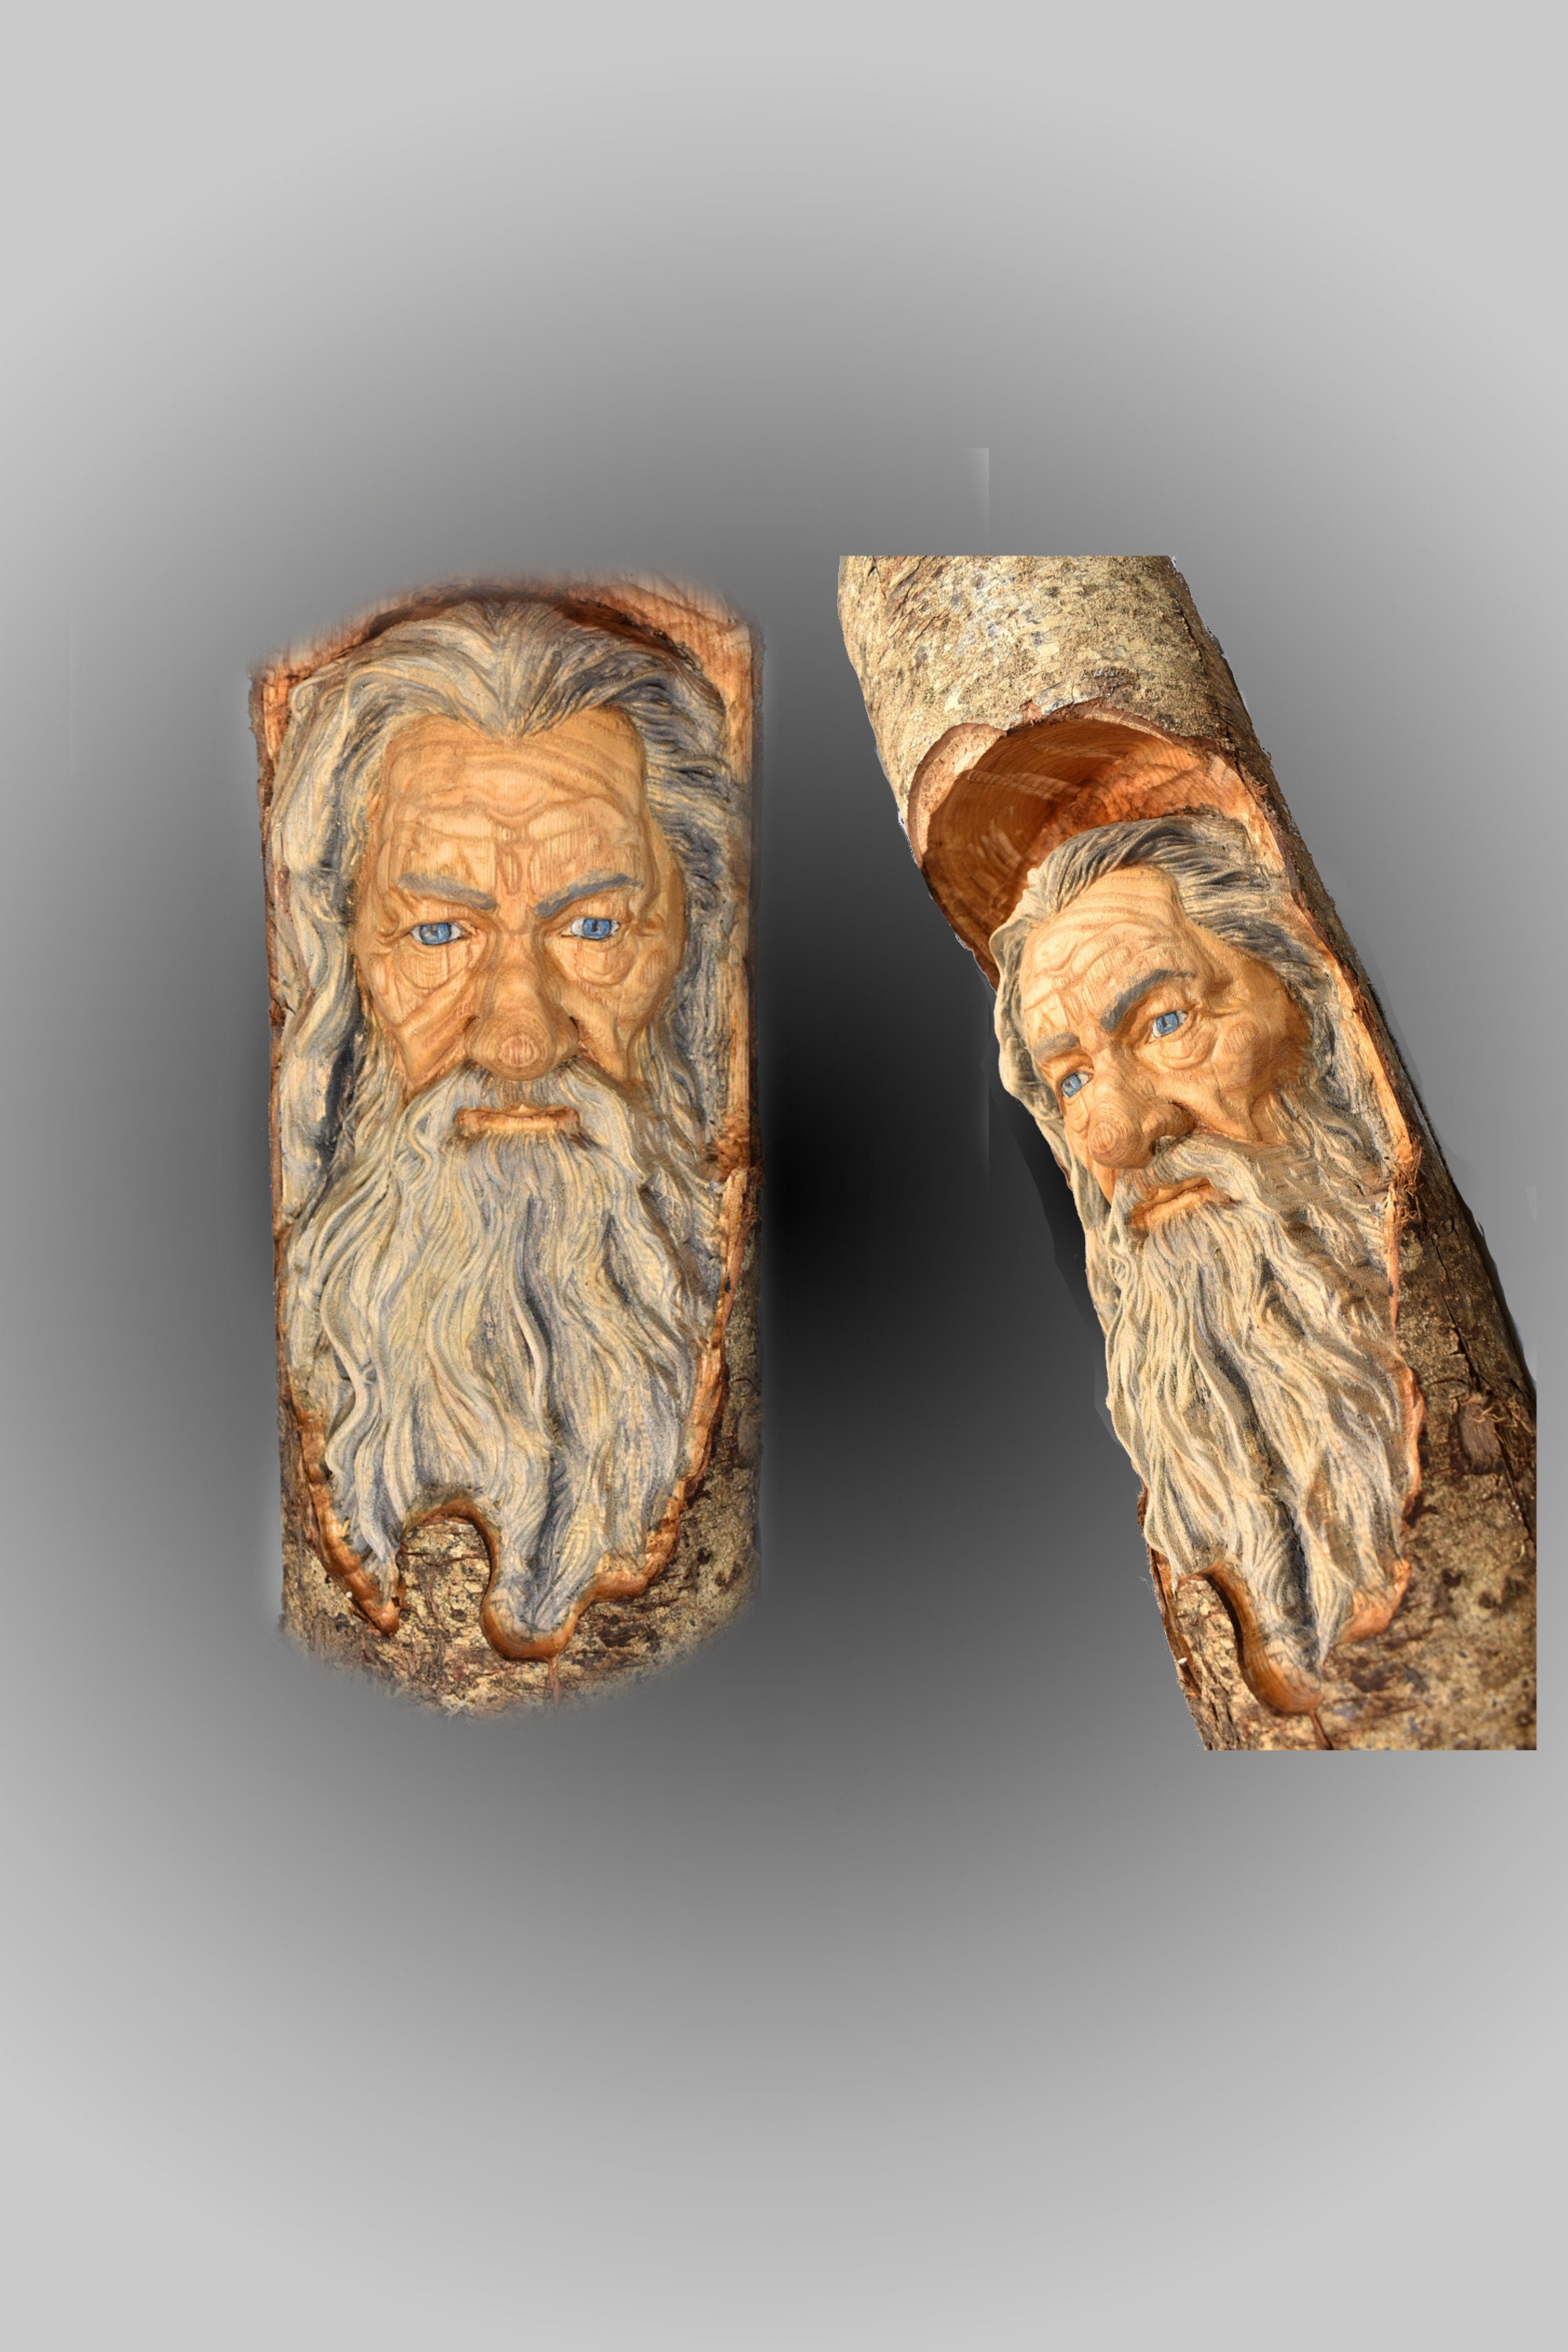 Spiritual Balance. Wood Sculpture art by Dobe Art